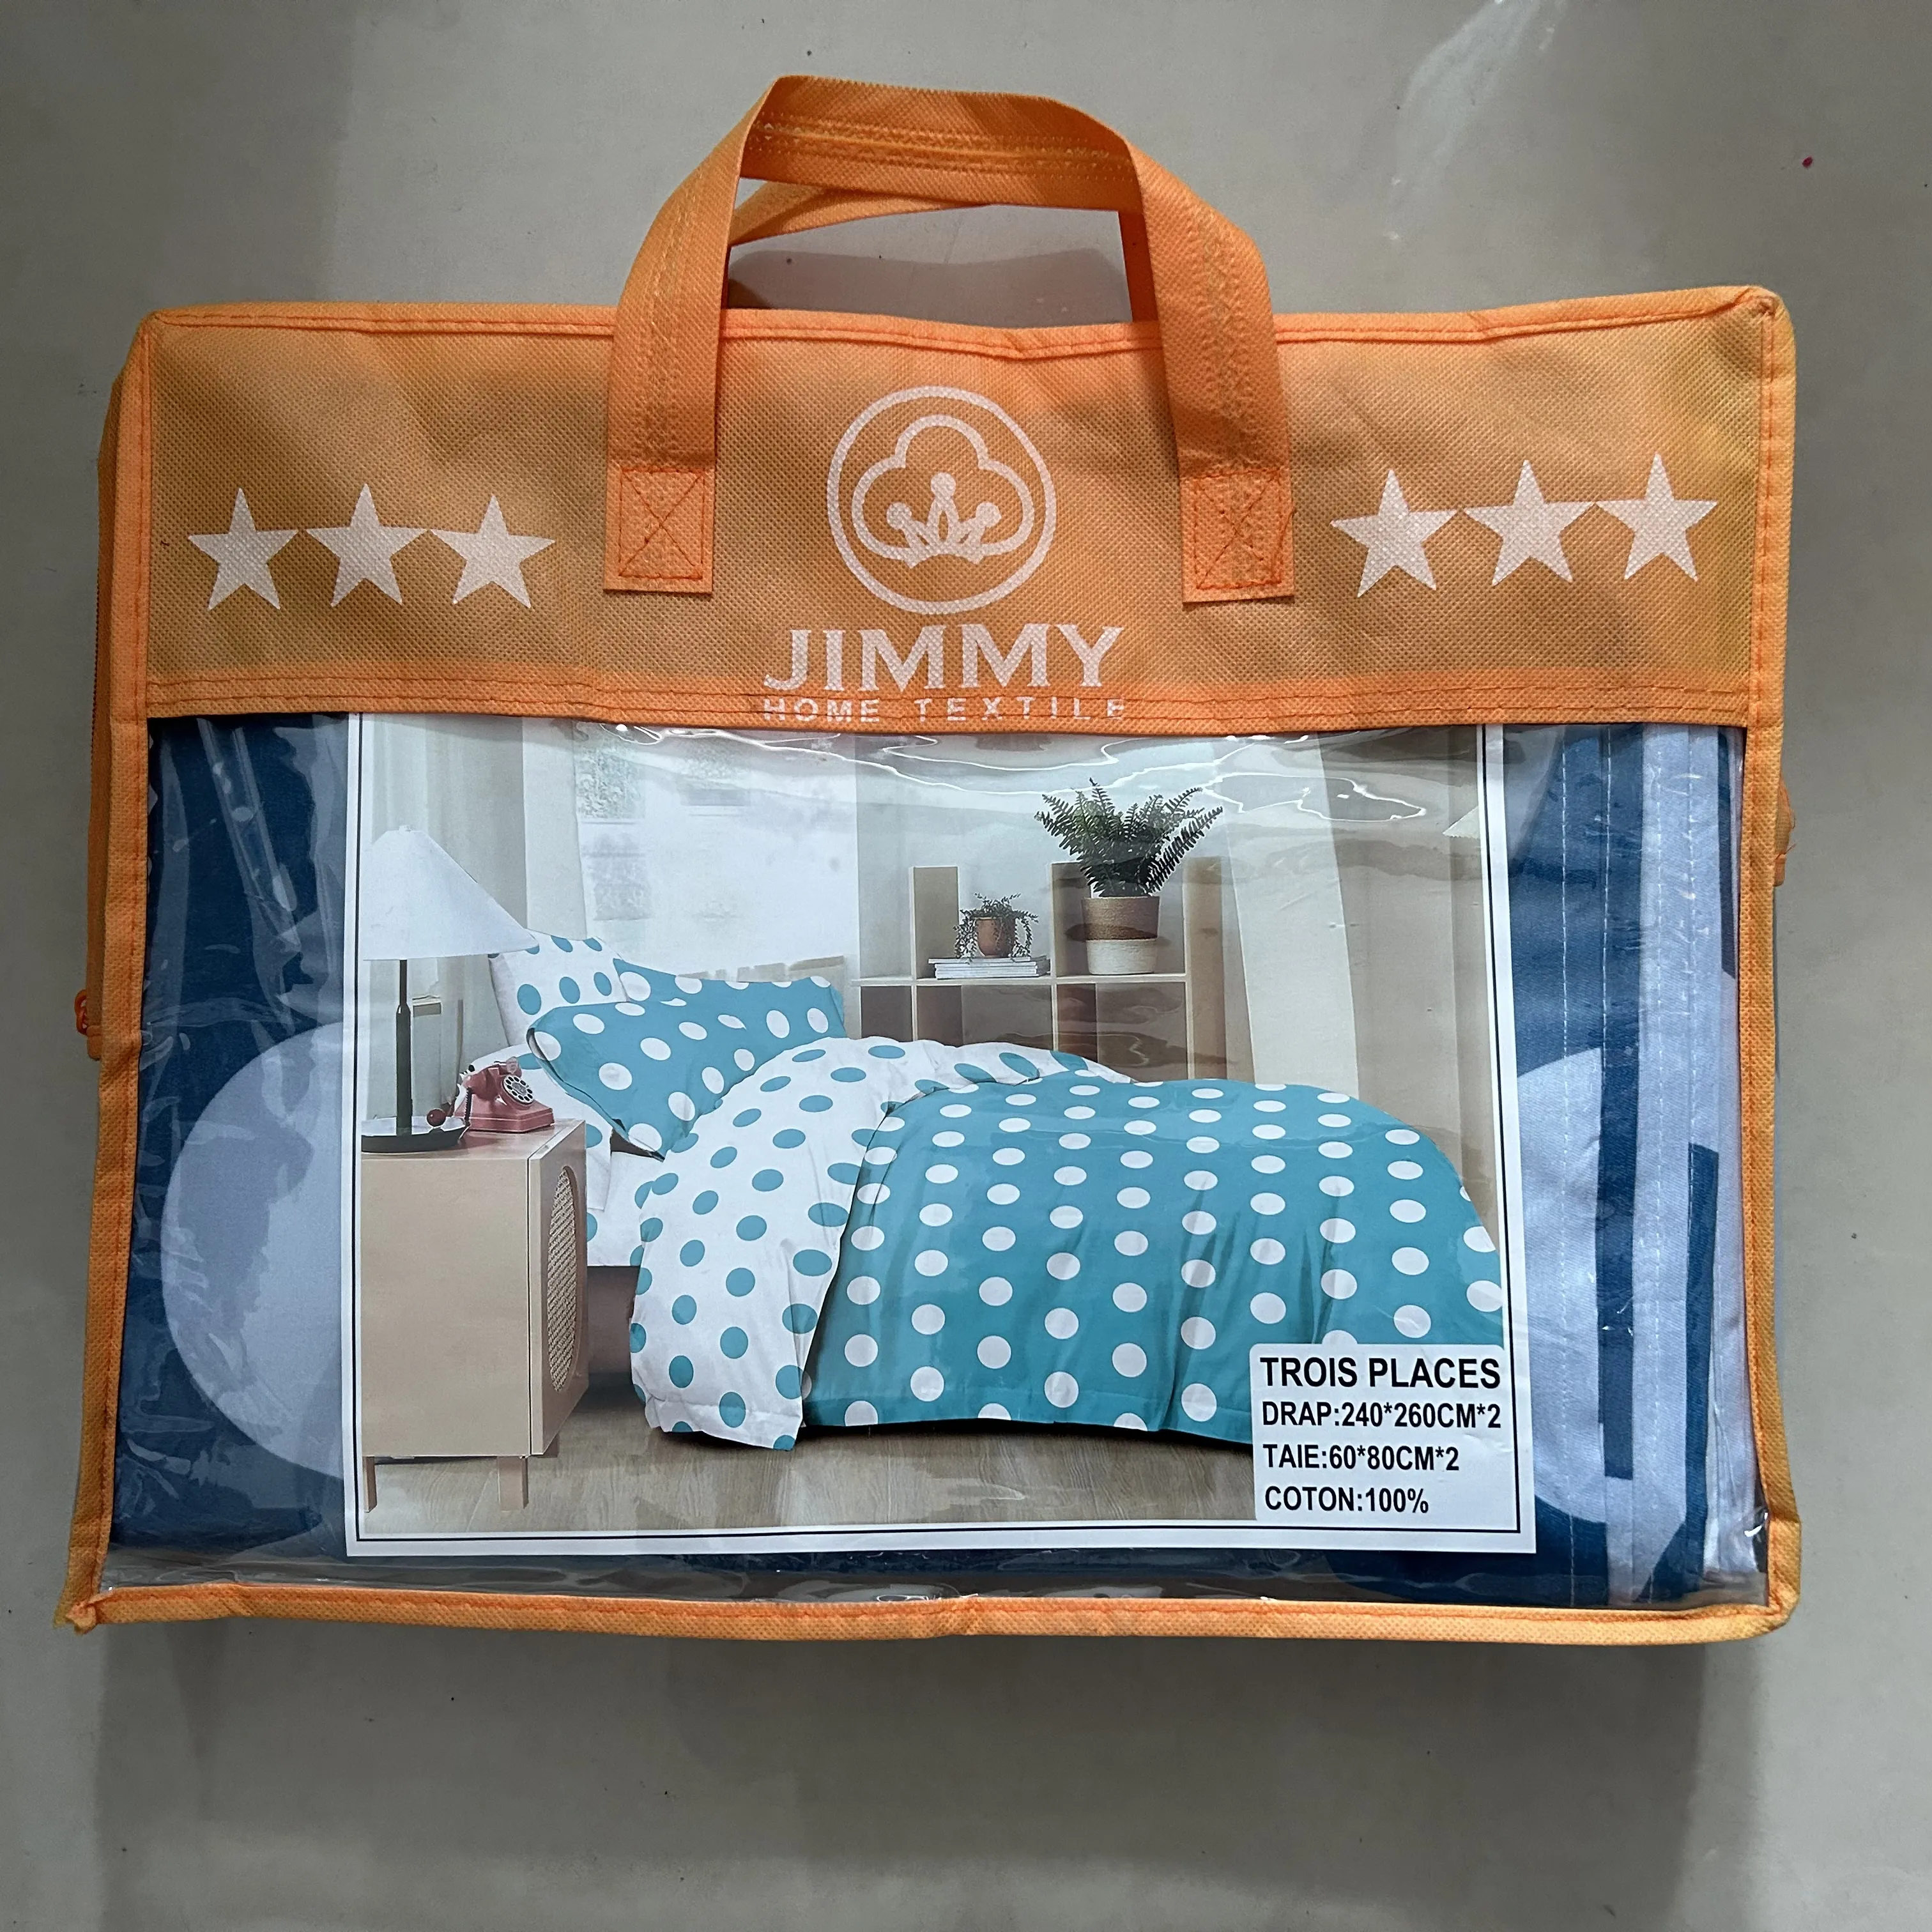 जिमी फैक्ट्री बेड शीट 4 टुकड़े 3 टुकड़ों में तकिए के साथ अच्छी गुणवत्ता वाली फ्लैट शीट 100% अच्छी गुणवत्ता वाली फ्लैट शीट